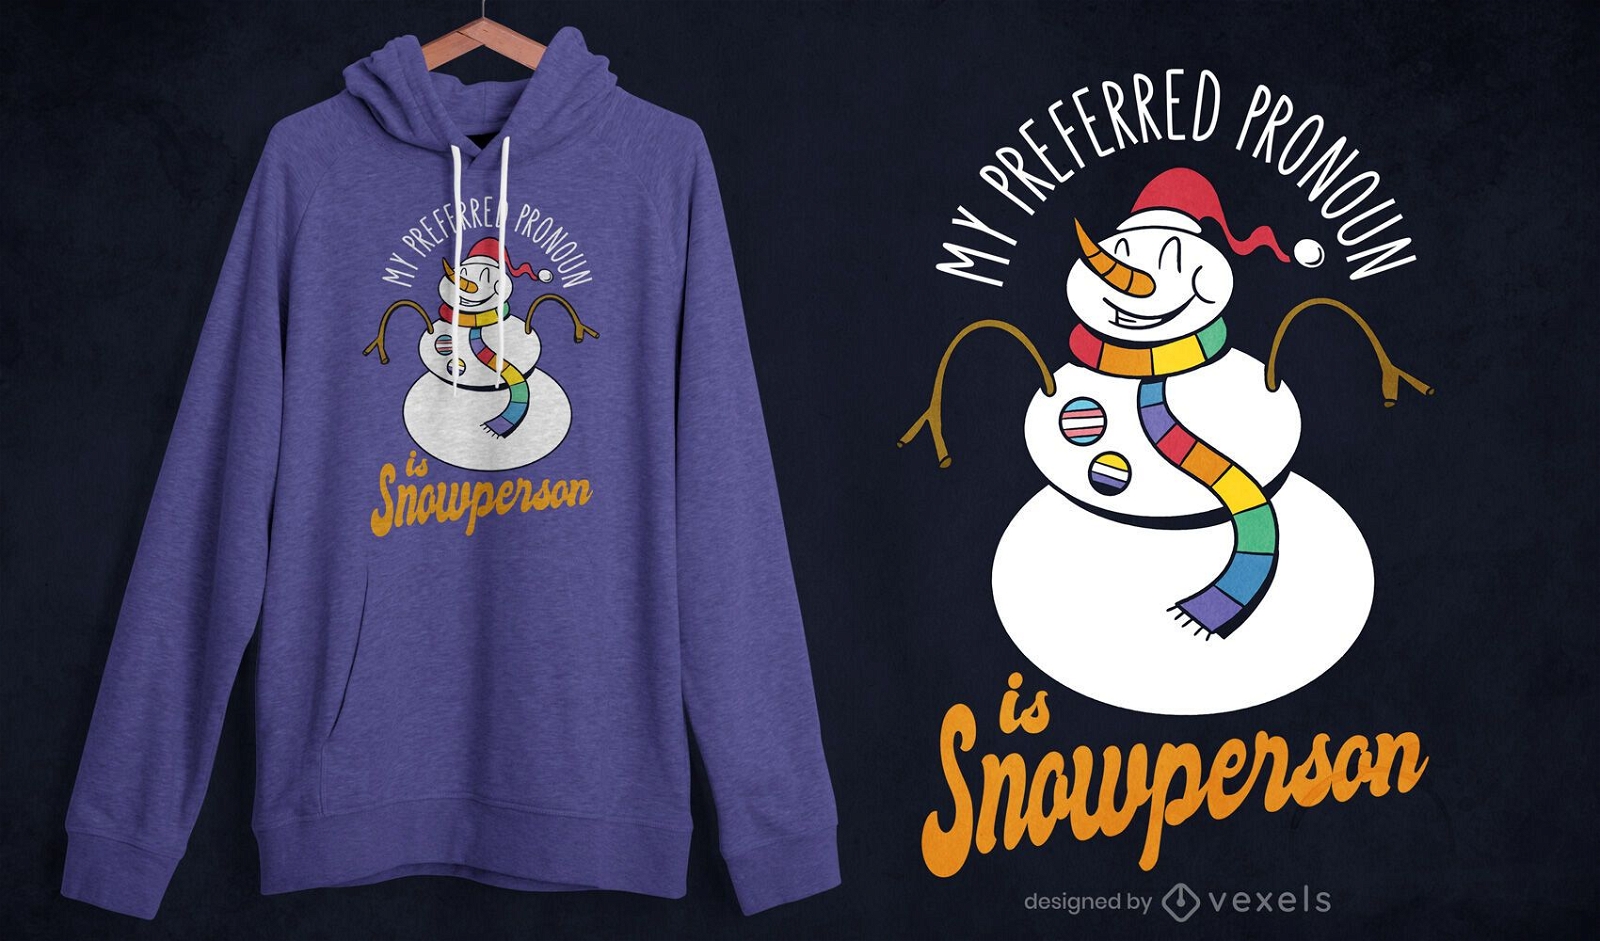 Snowperson t-shirt design